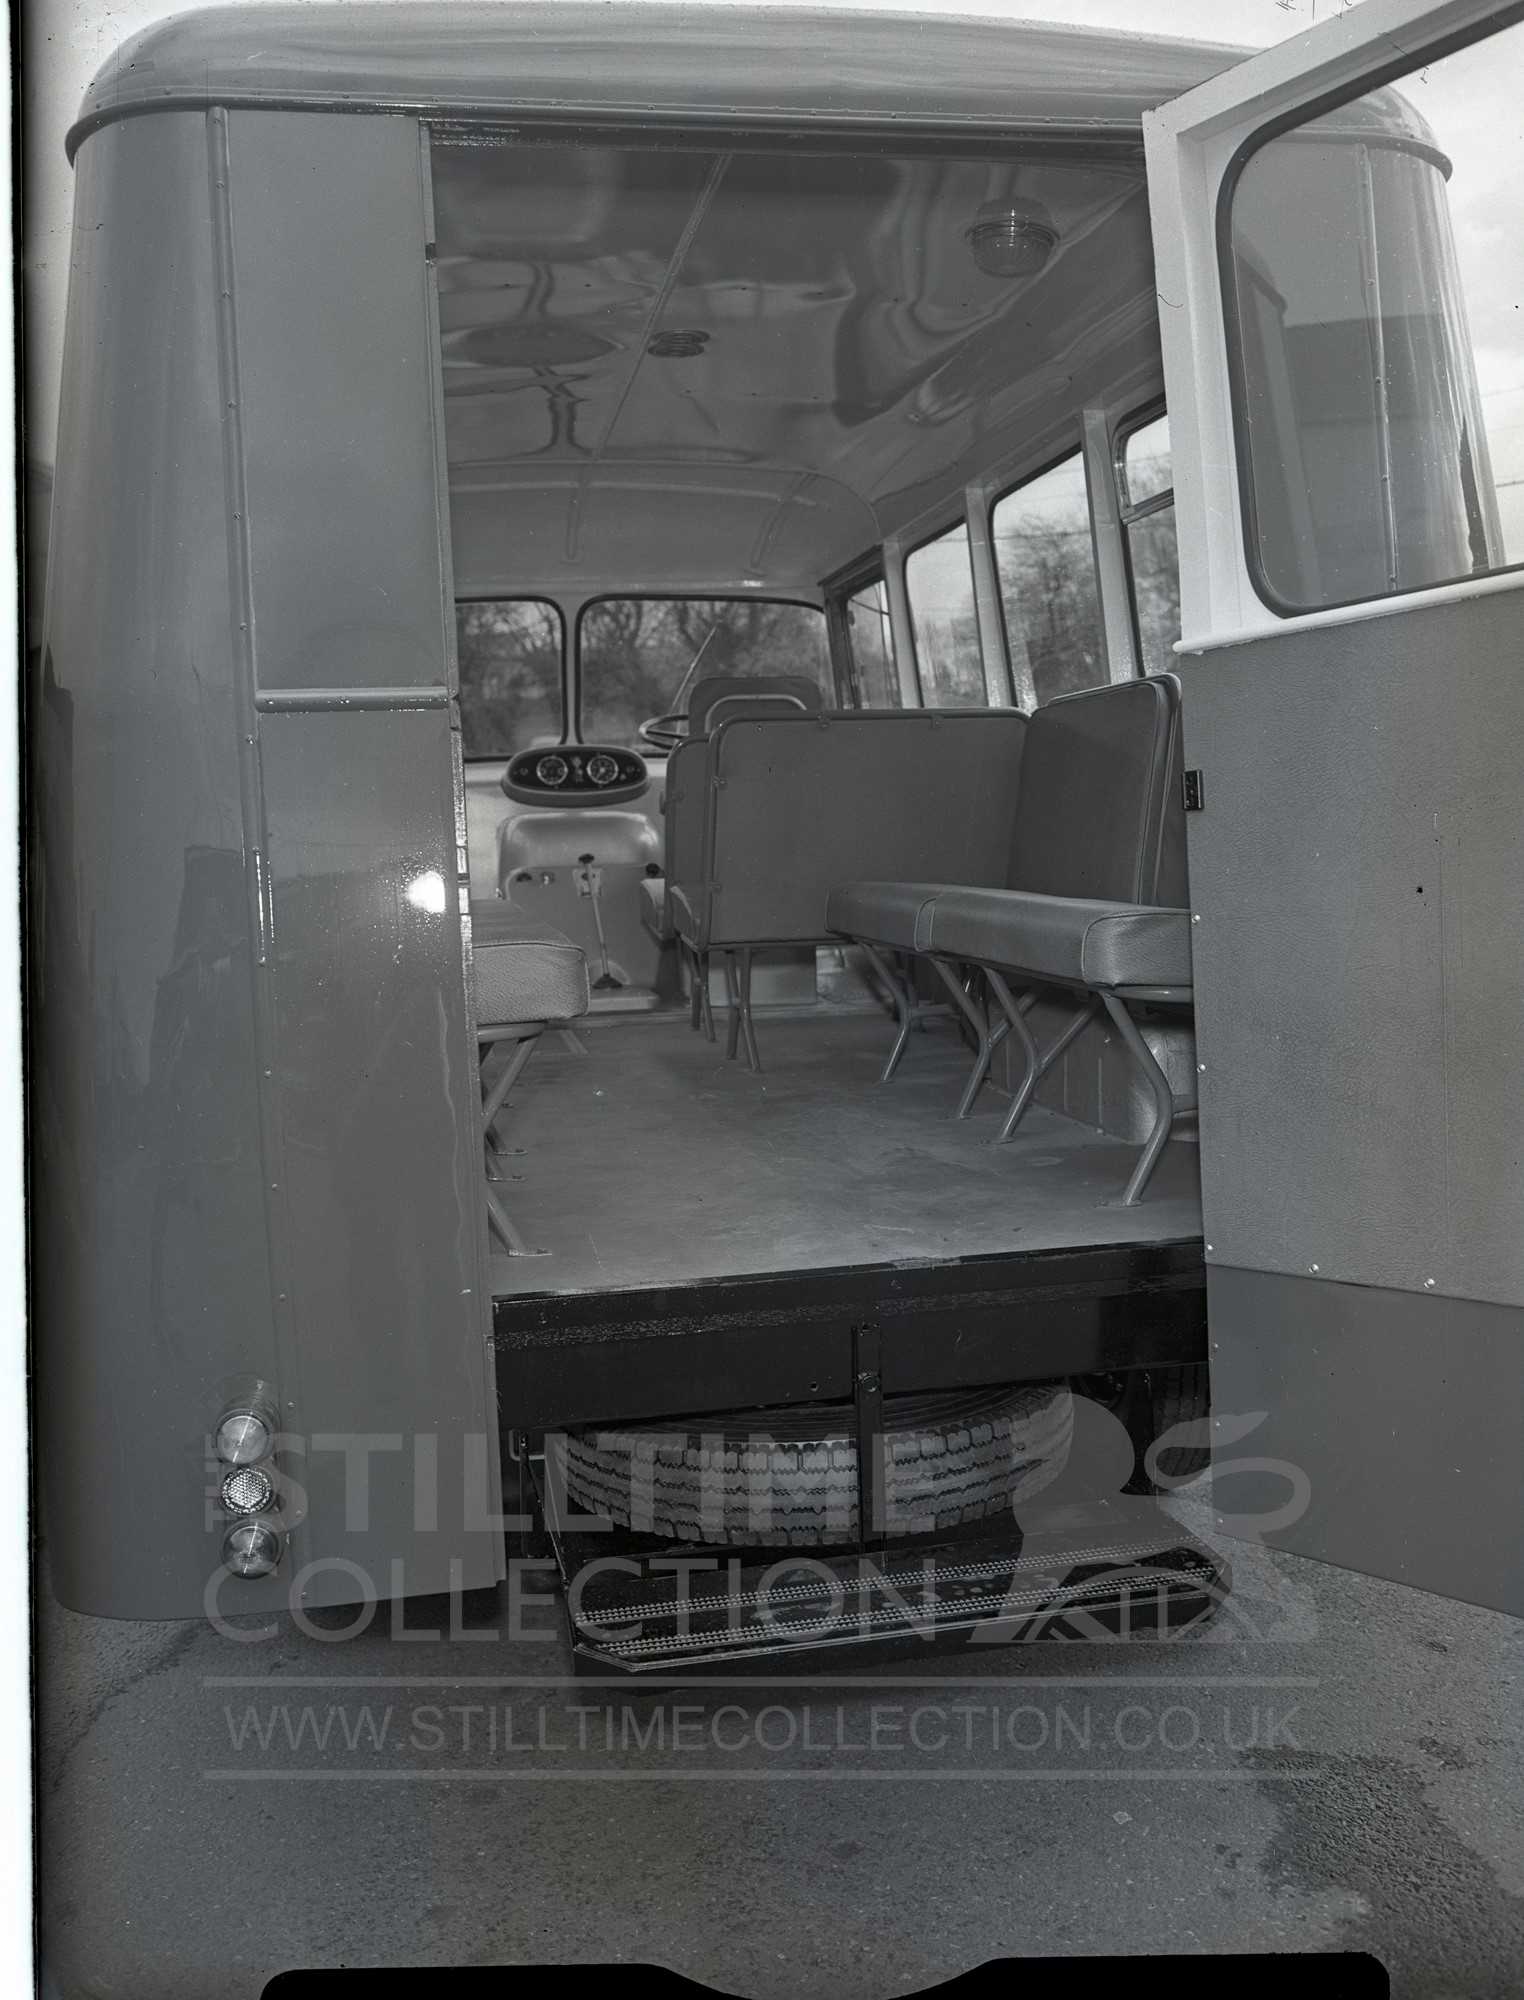 Trojan Minibus.  Commercial vehicle, Bus coach, Trojan